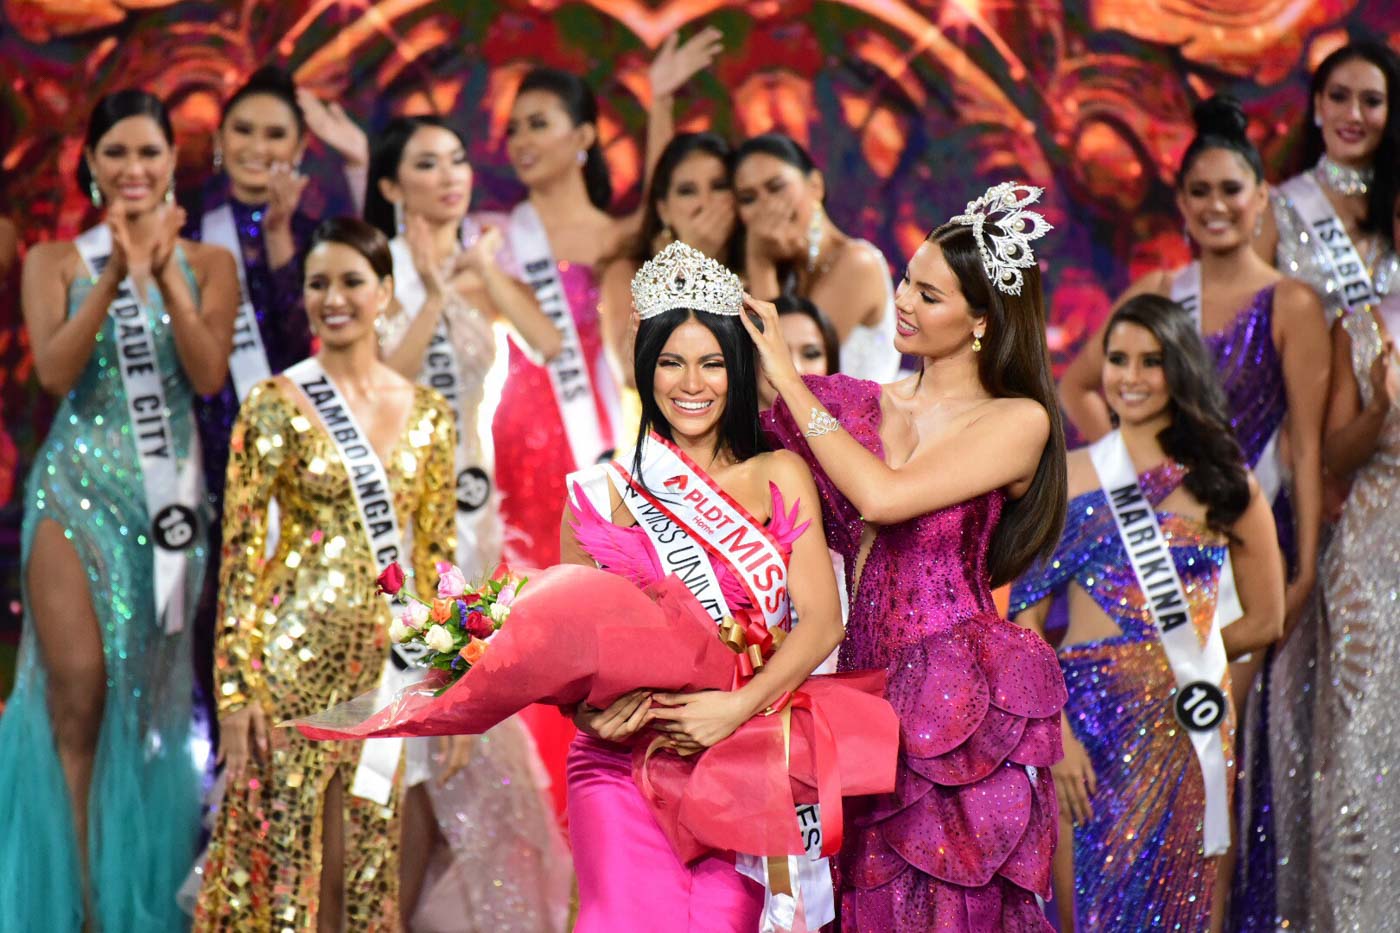 Đăng quang Hoa hậu Hoàn vũ Philippines 2019 là Gazini Christiana Ganados (23 tuổi). Cô sở hữu chiều cao 1,73m, tốt nghiệp Đại học San Jose-Recoletos, chuyên ngành du lịch. Trong ảnh, Gazini Christiana Ganados nhận vương miện từ người tiền nhiệm, cũng là đương kim Miss Universe - Hoa hậu Hoàn vũ Catriona Gray